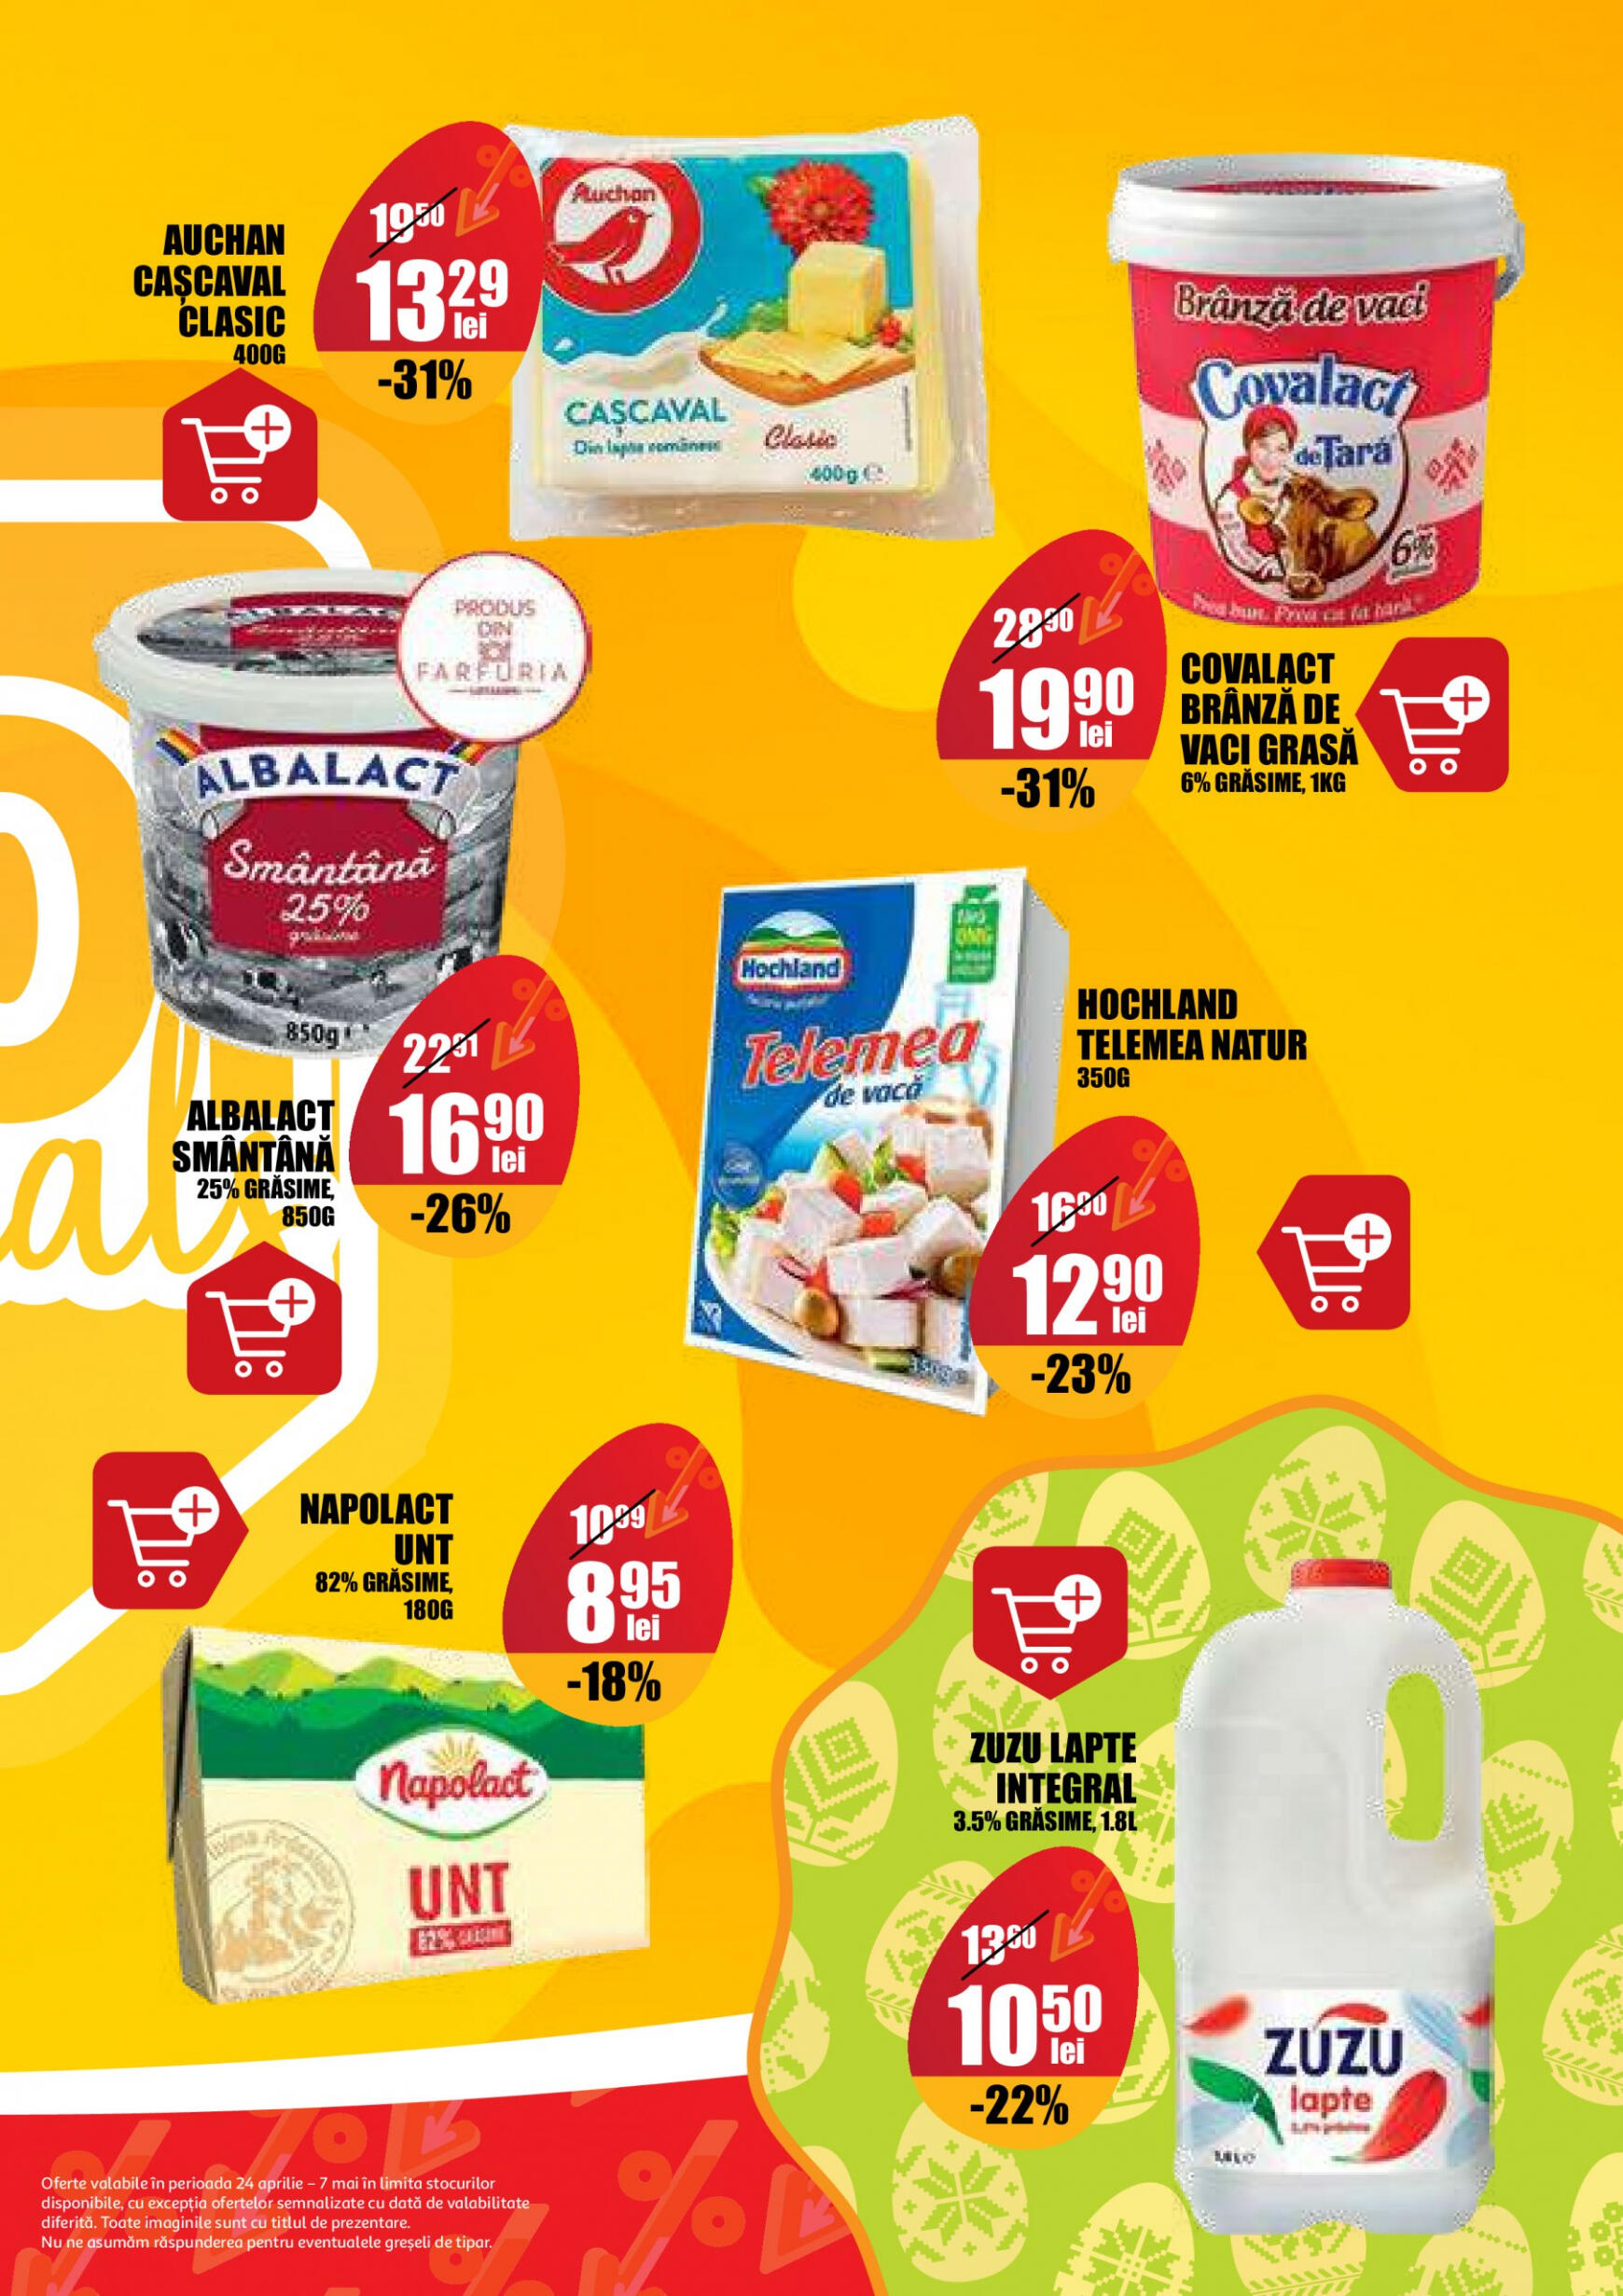 auchan - Catalog nou Auchan 24.04. - 07.05. - page: 7